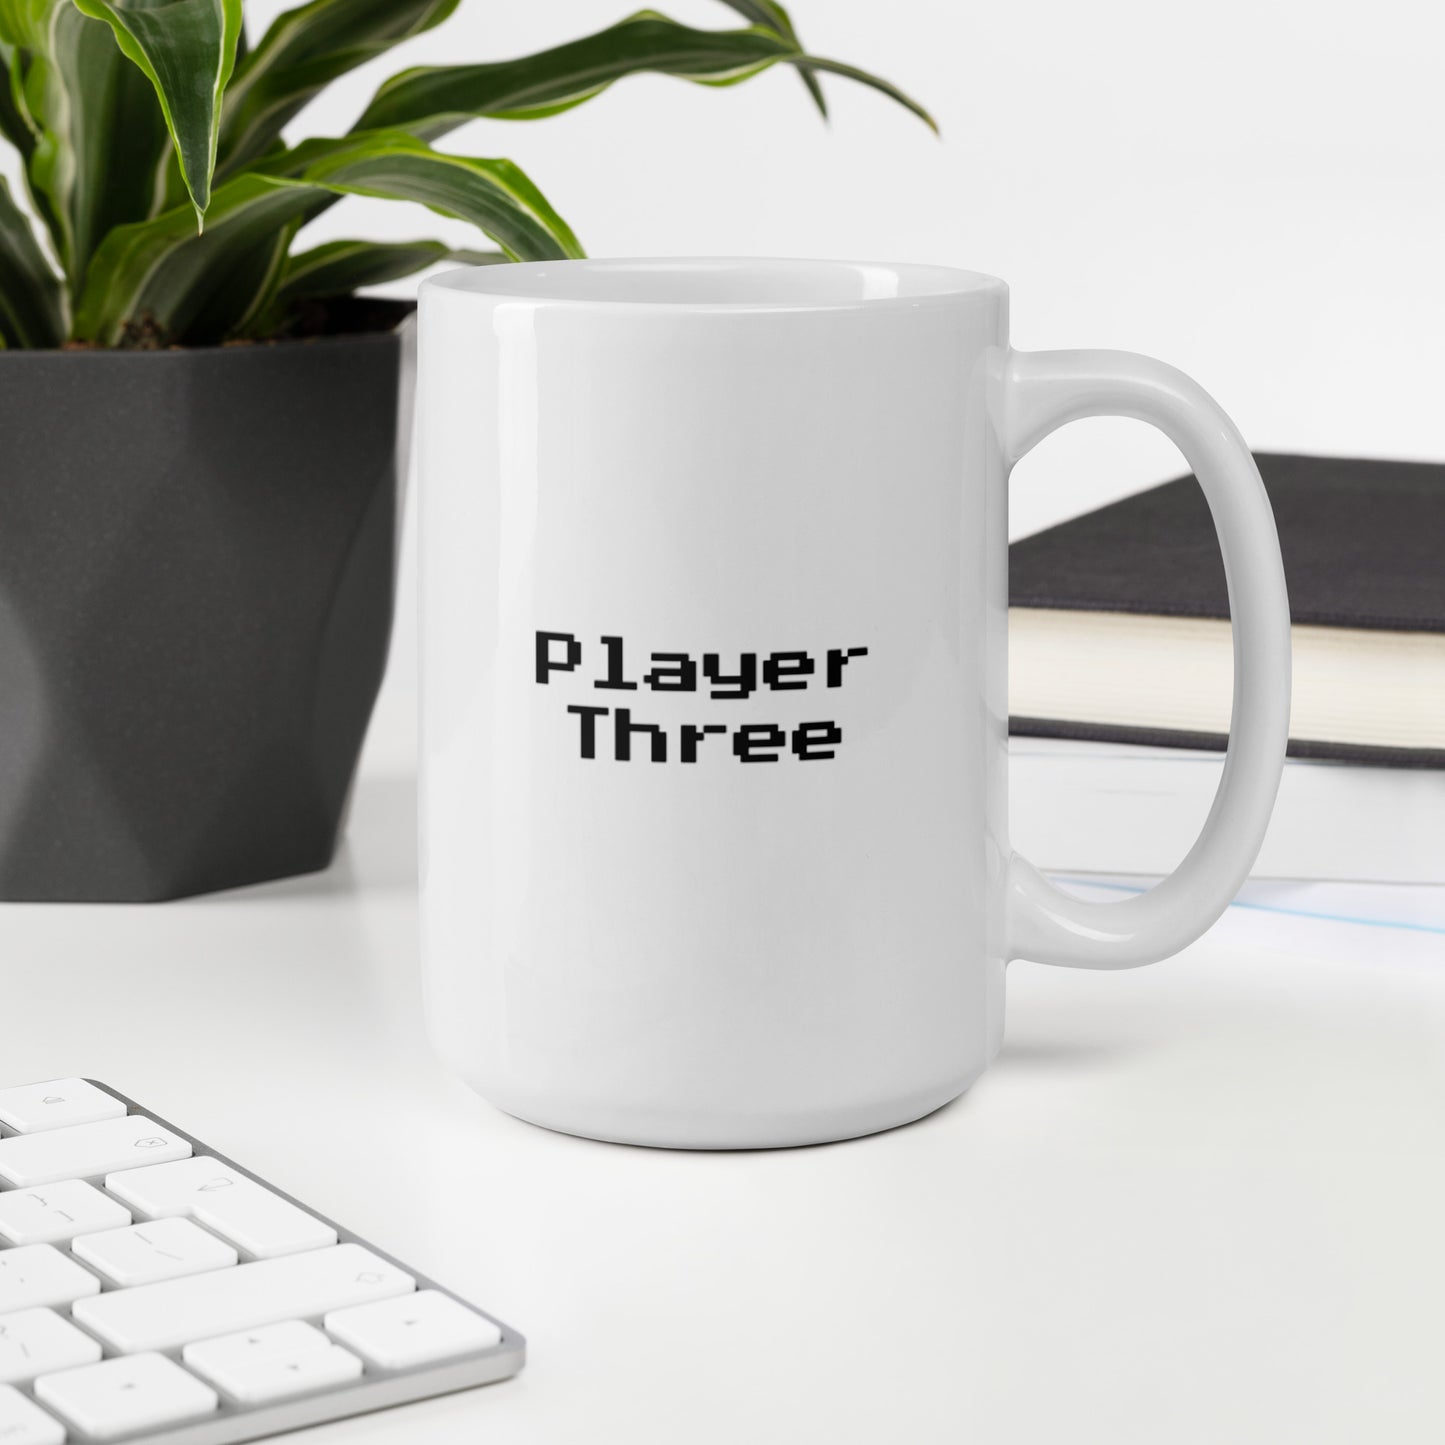 Player three - Mug